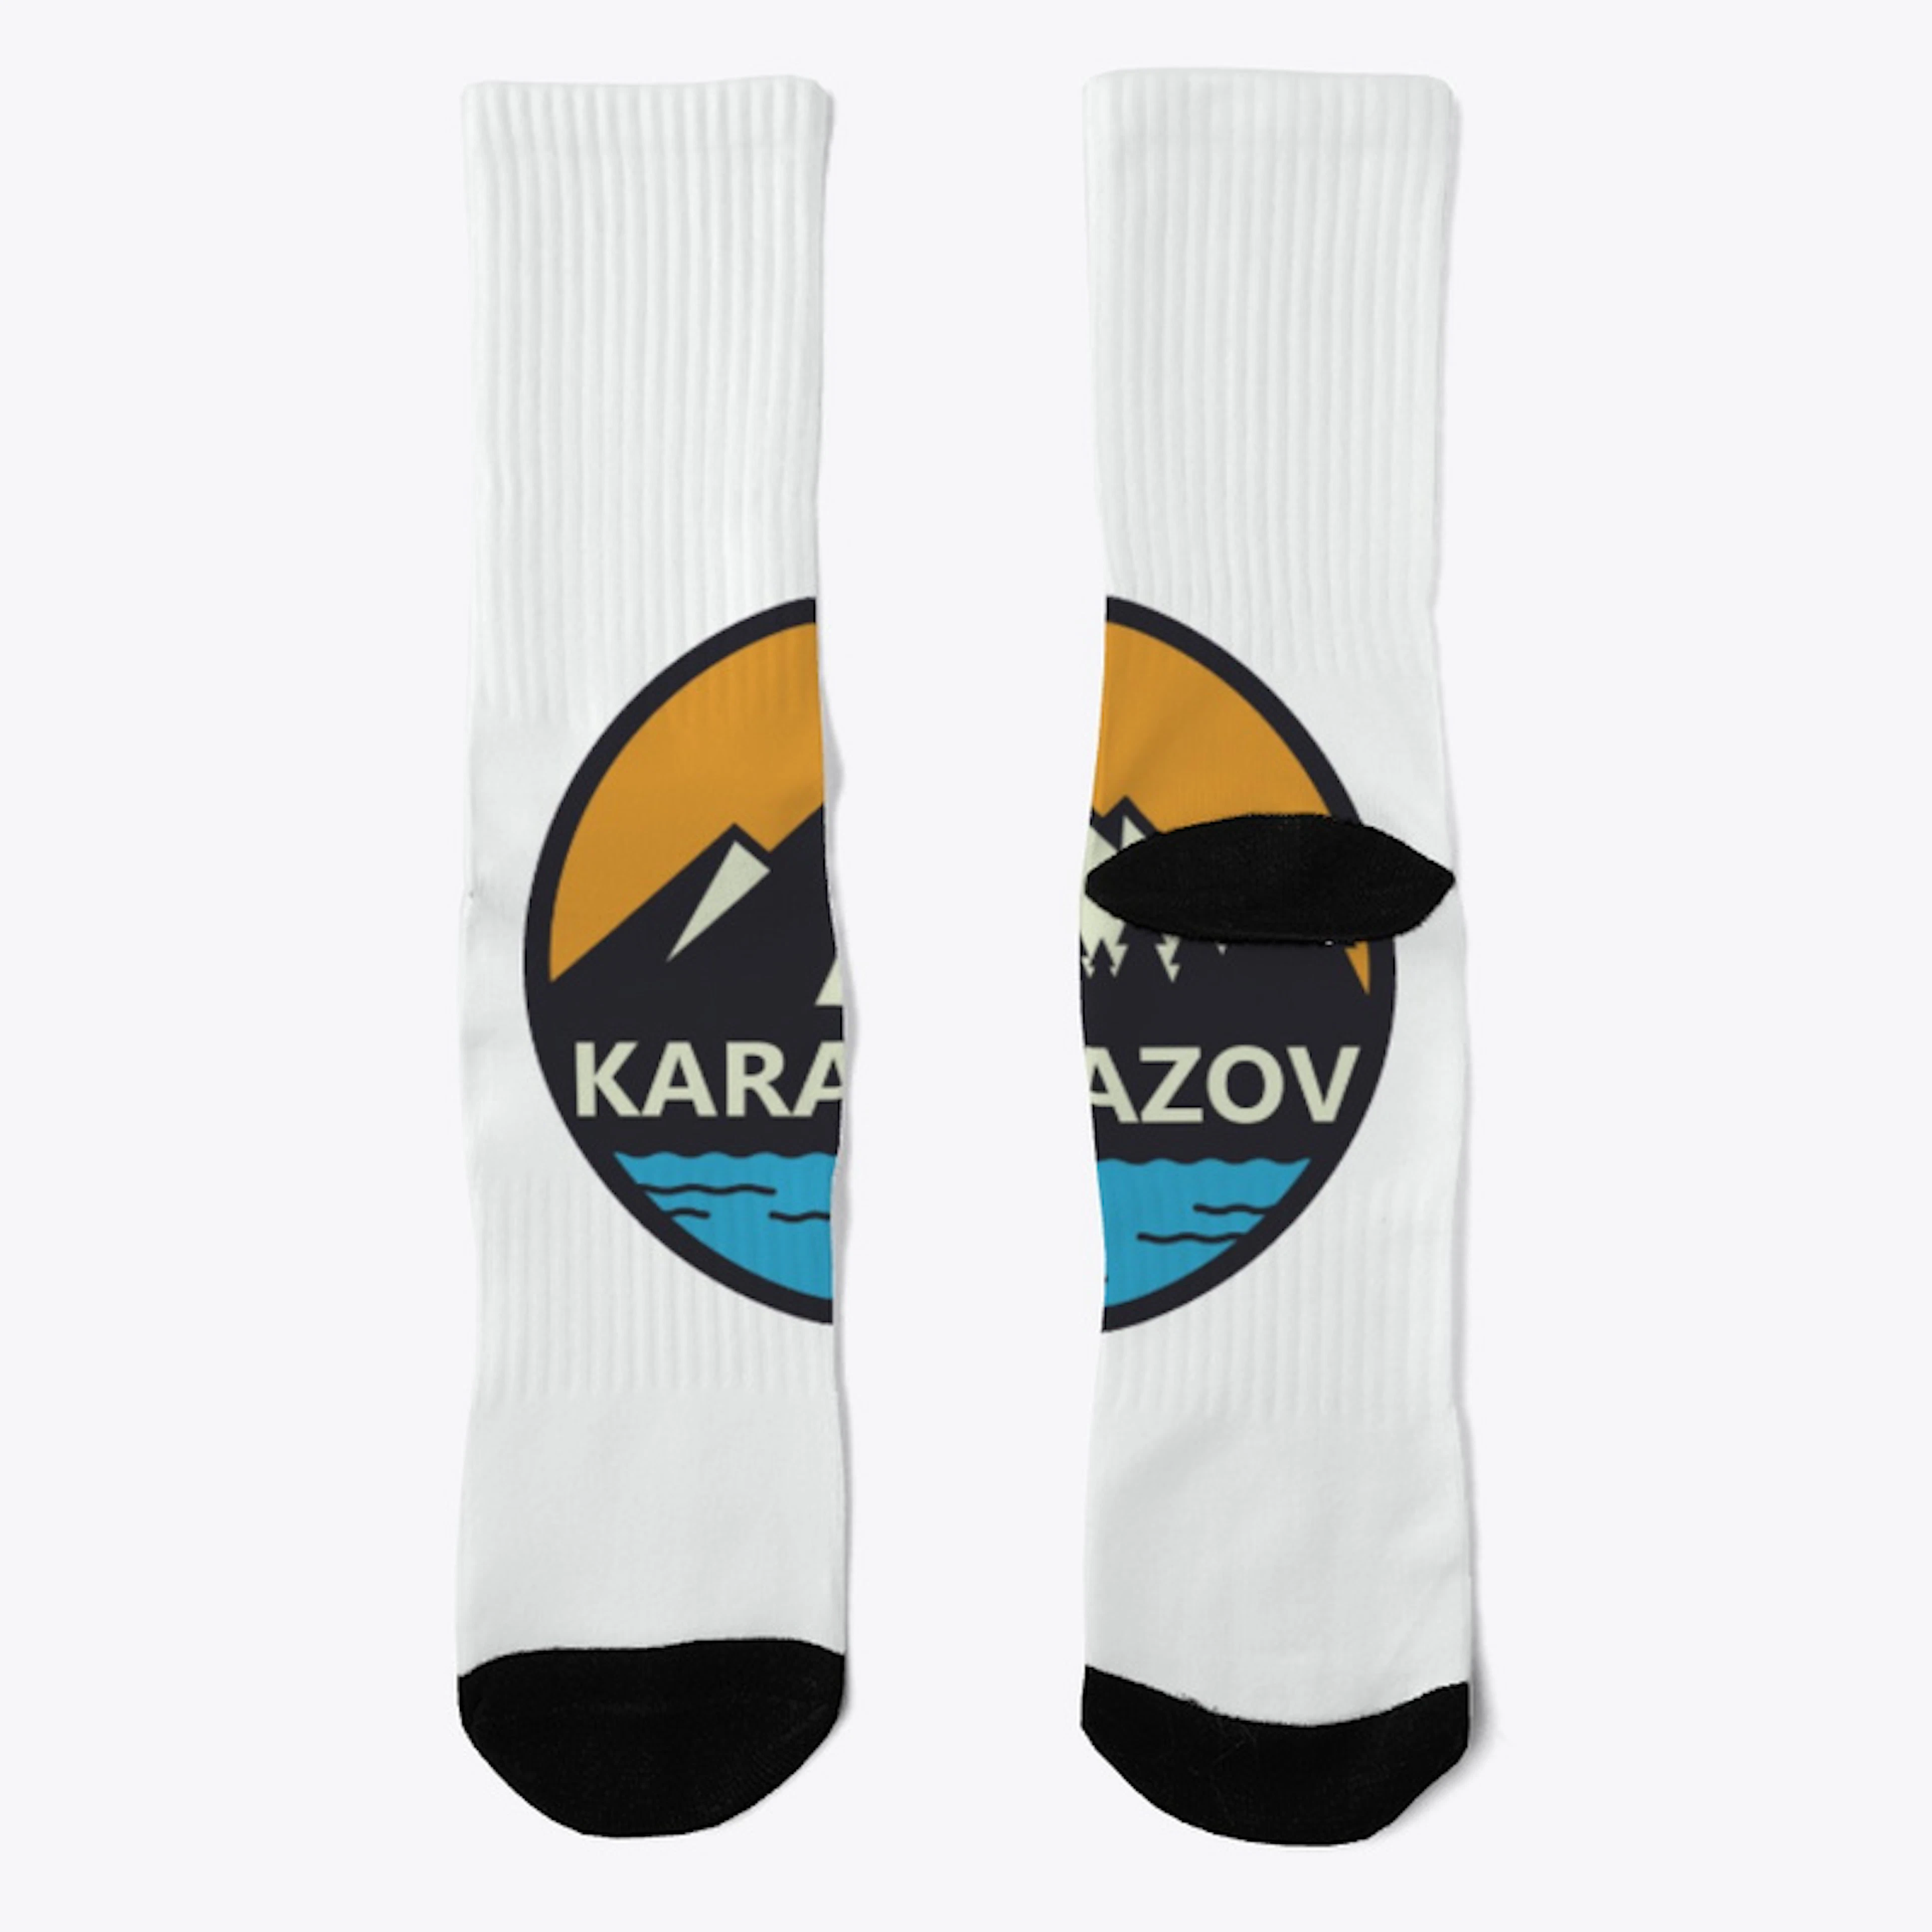 karamazov-classic-socks